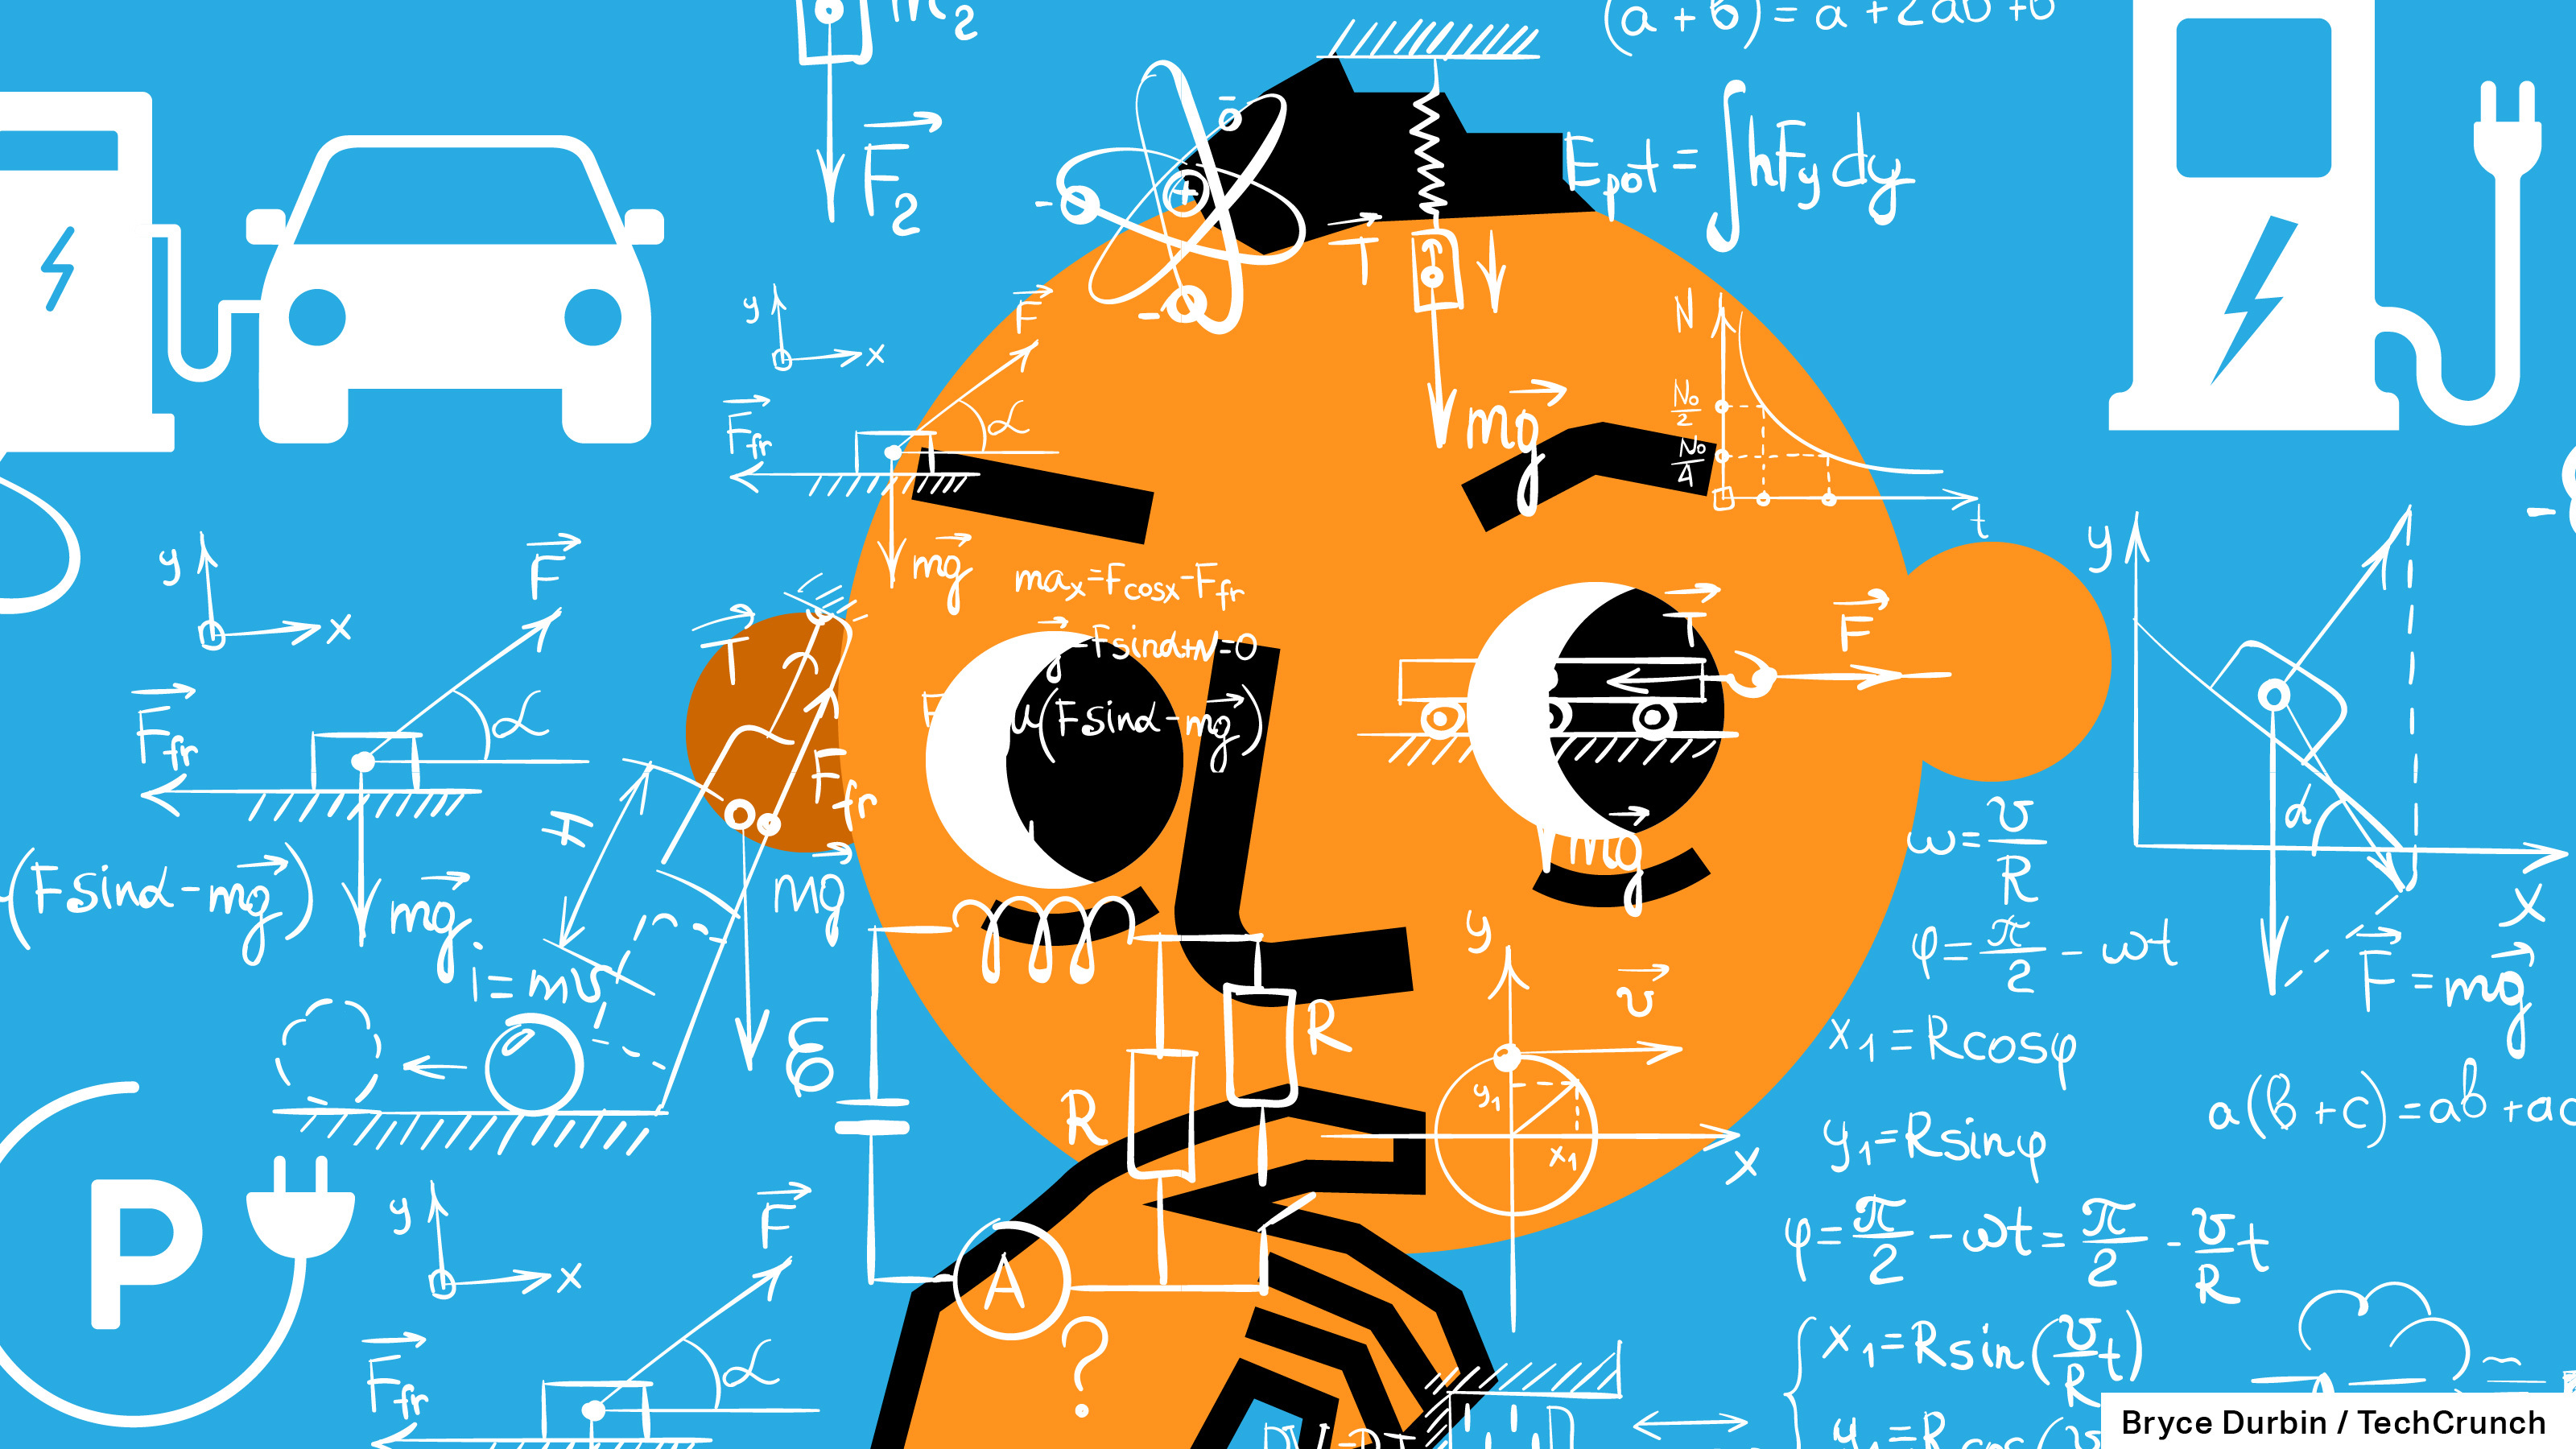 رسم توضيحي لرجل يفكر بالأرقام ورموز المركبات الكهربائية المحيطة به.